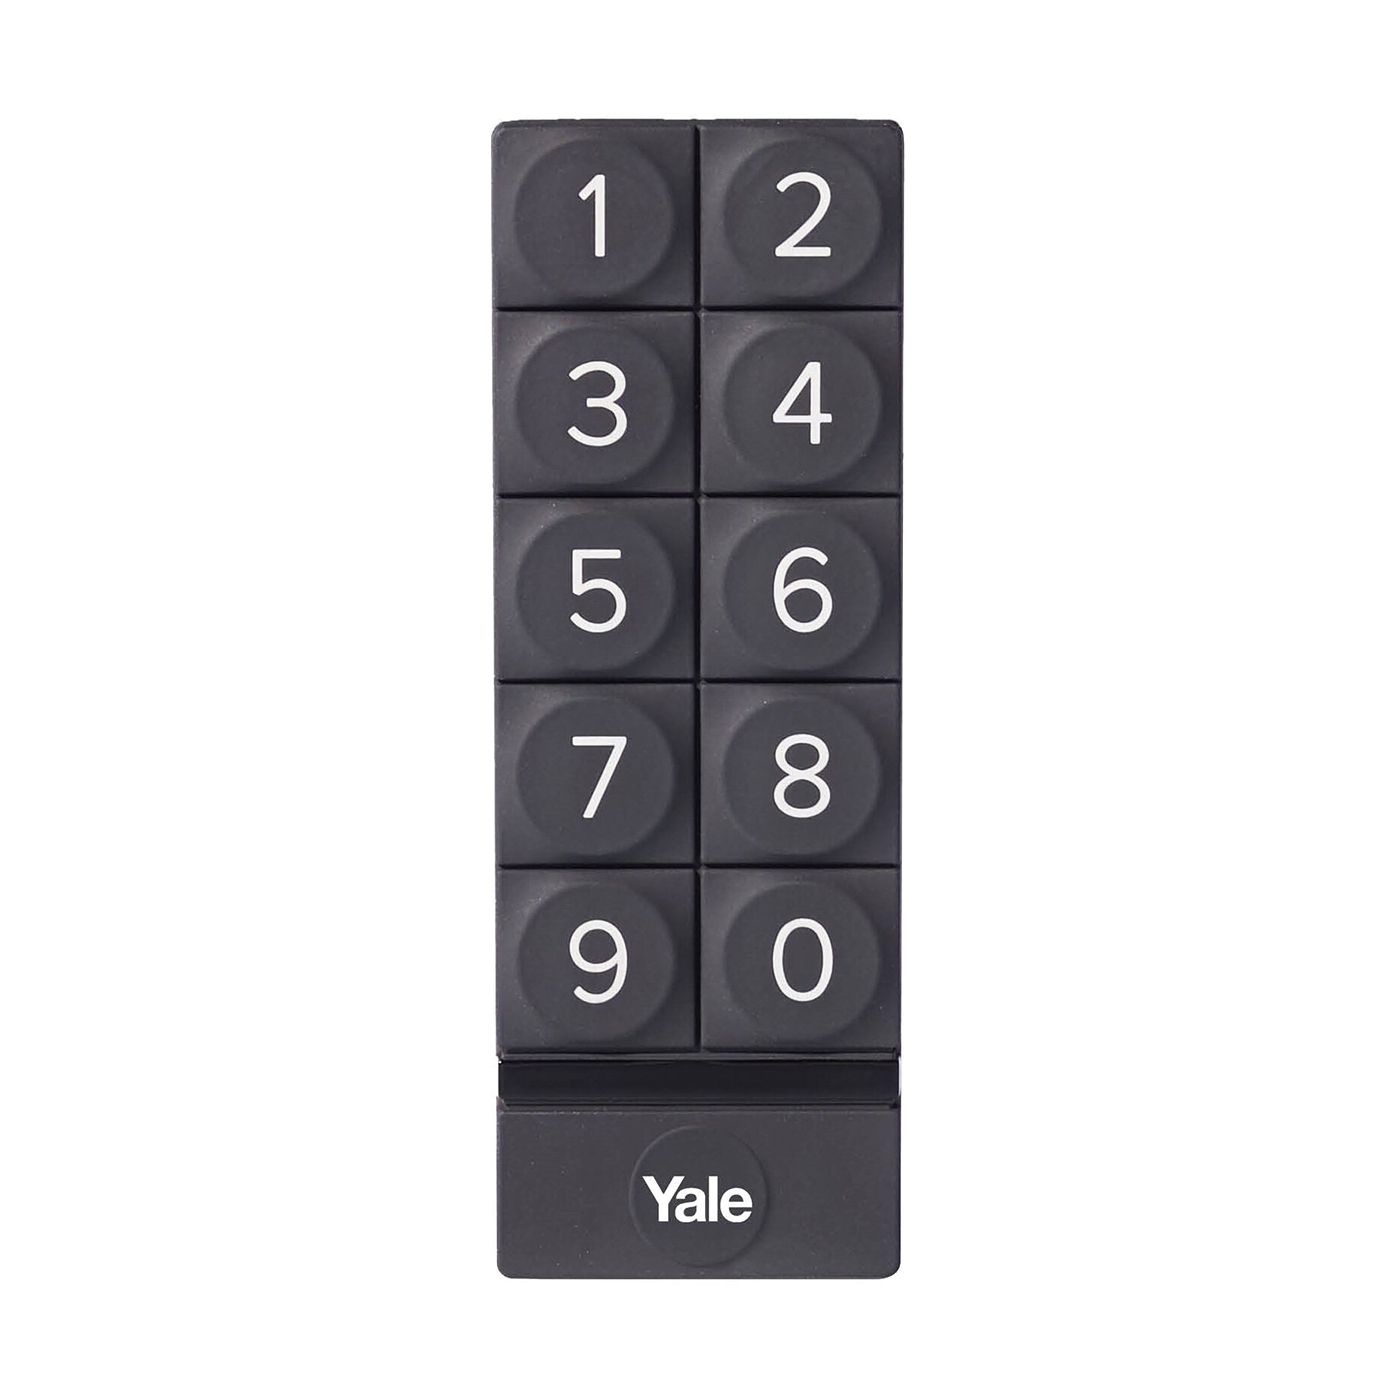 Inteligentny zamek Yale Linus Smart Lock L2 czarny - zestaw z klawiaturą numeryczną Yale - Smart Keypad oraz regulowaną wkładką Linus® Smart Lock